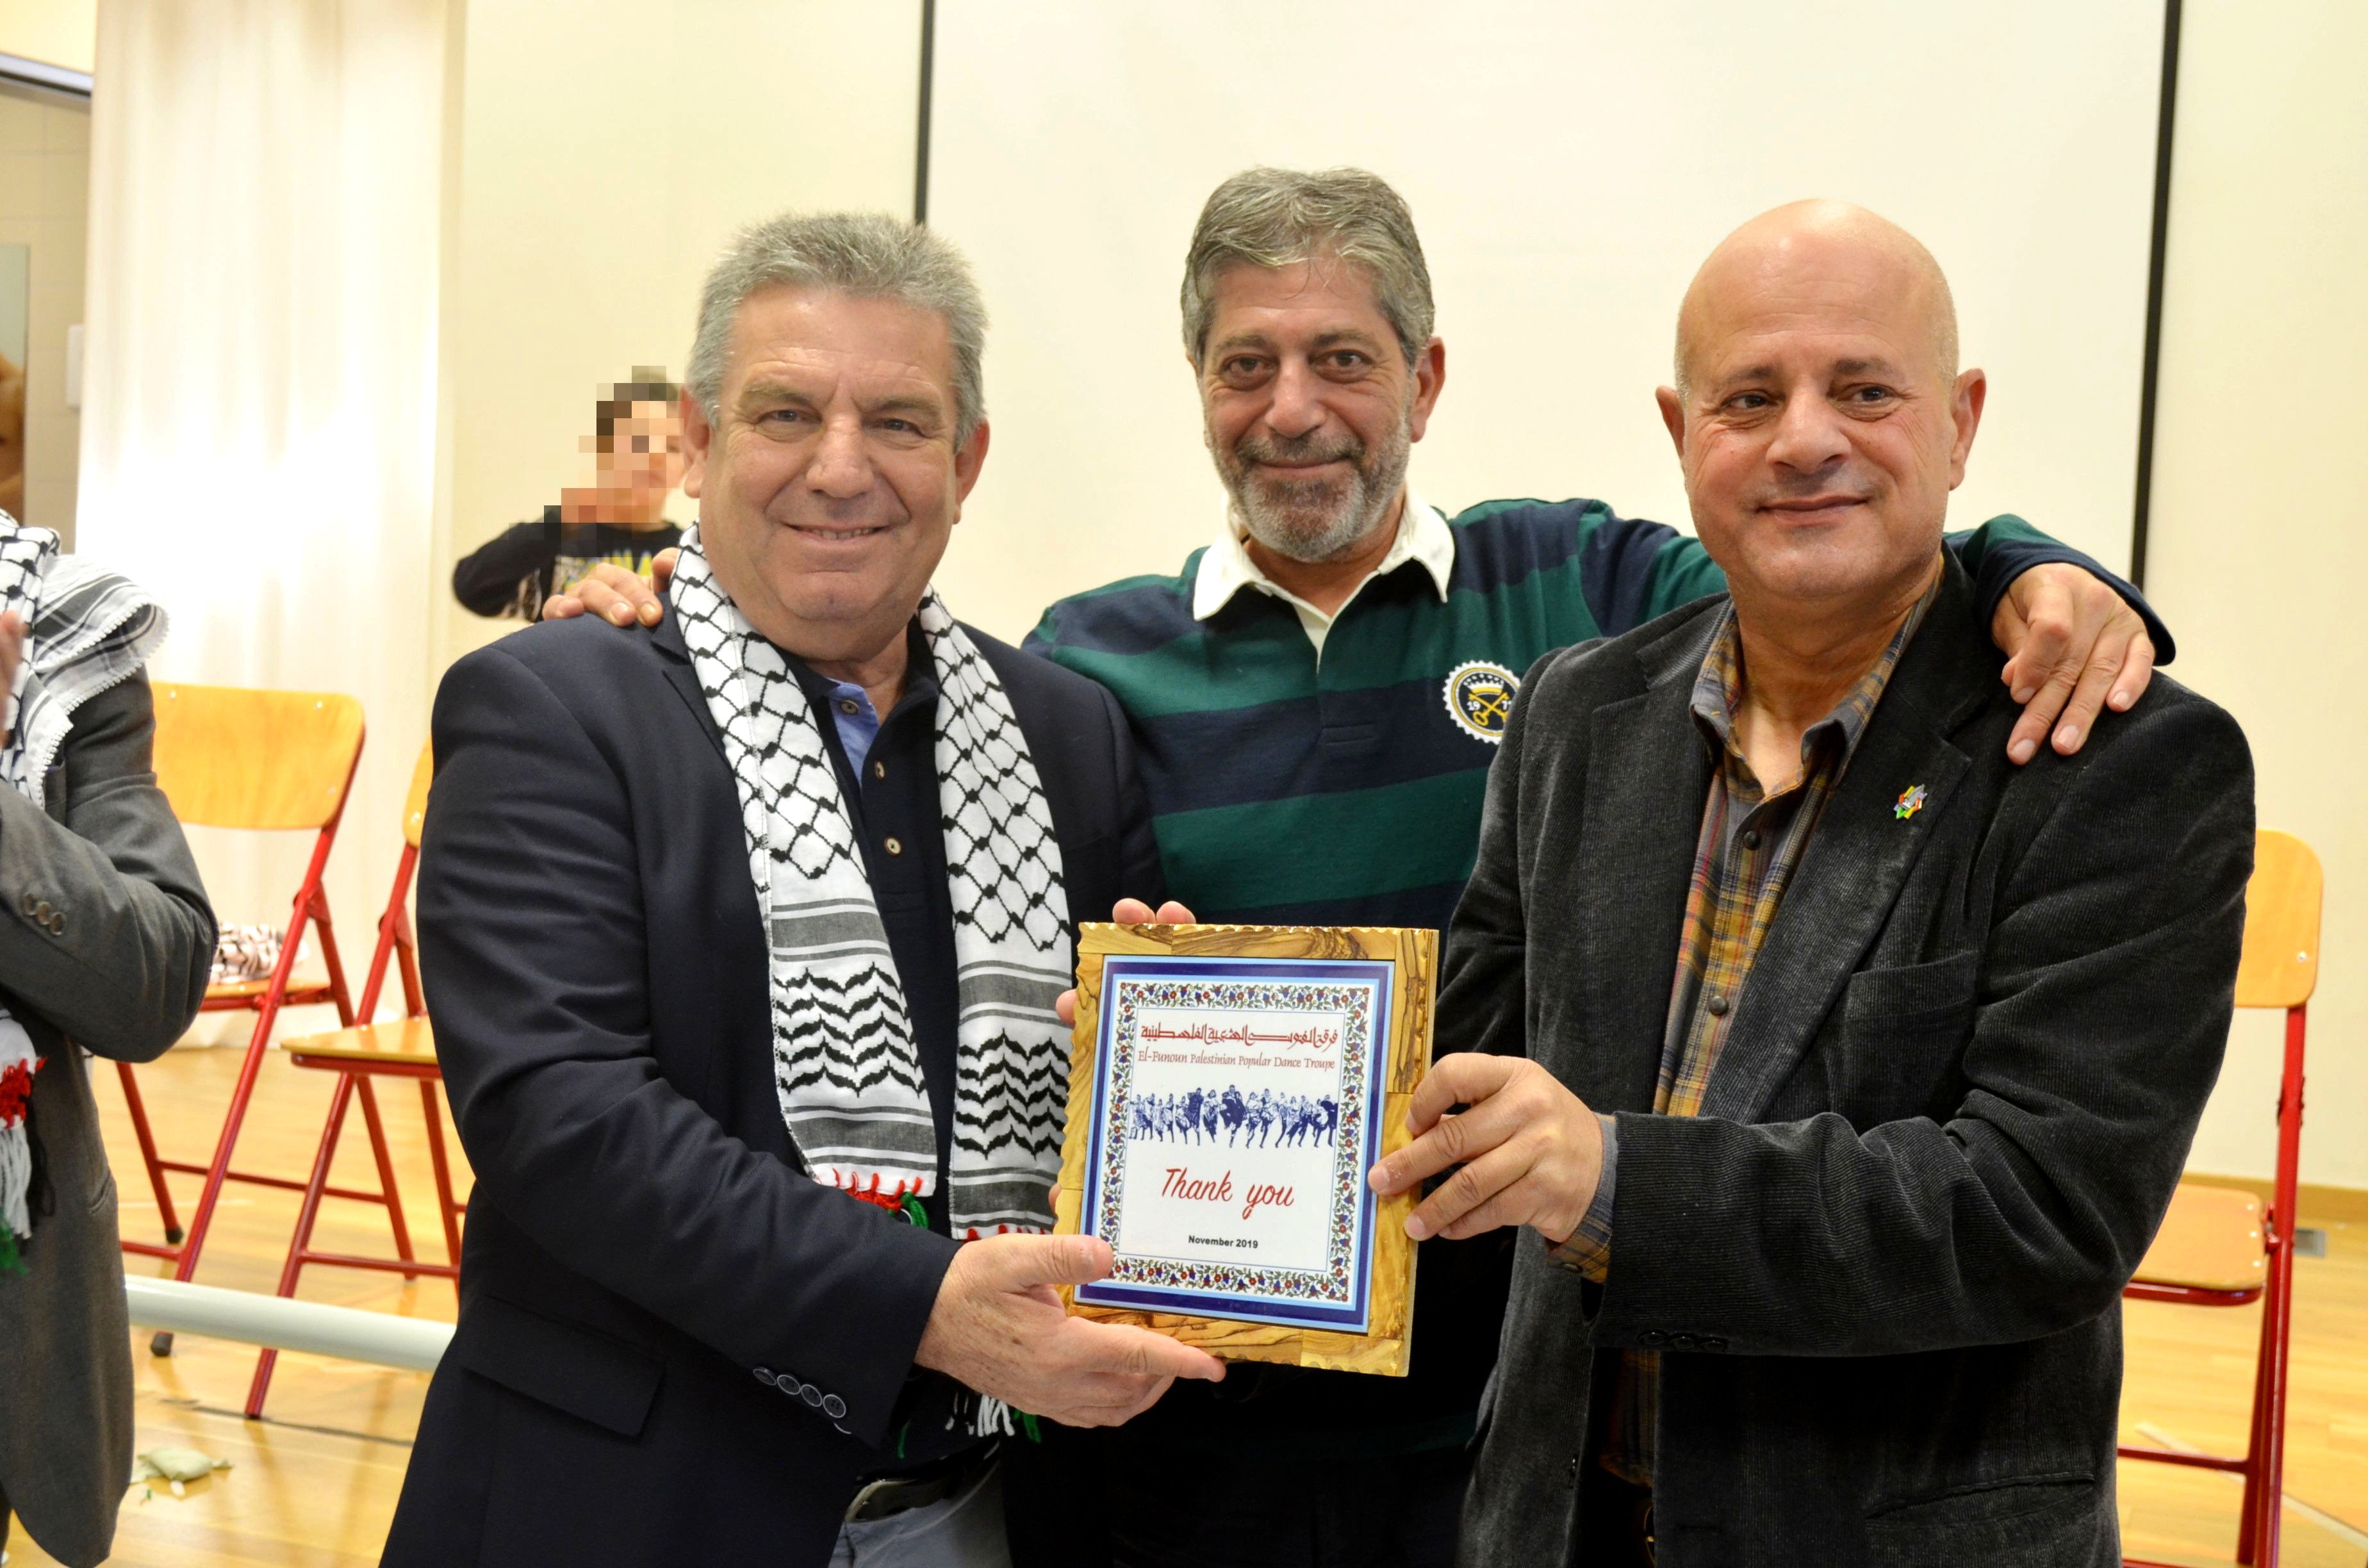 Ο Πρέσβης του κράτους της Παλαιστίνης και ο υπεύθυνος του παλαιστινιακού χορευτικού συγκροτήματος παραδίδουν στον Δήμαρχο Ιλίου αναμνηστικό ευχαριστήριο δώρο